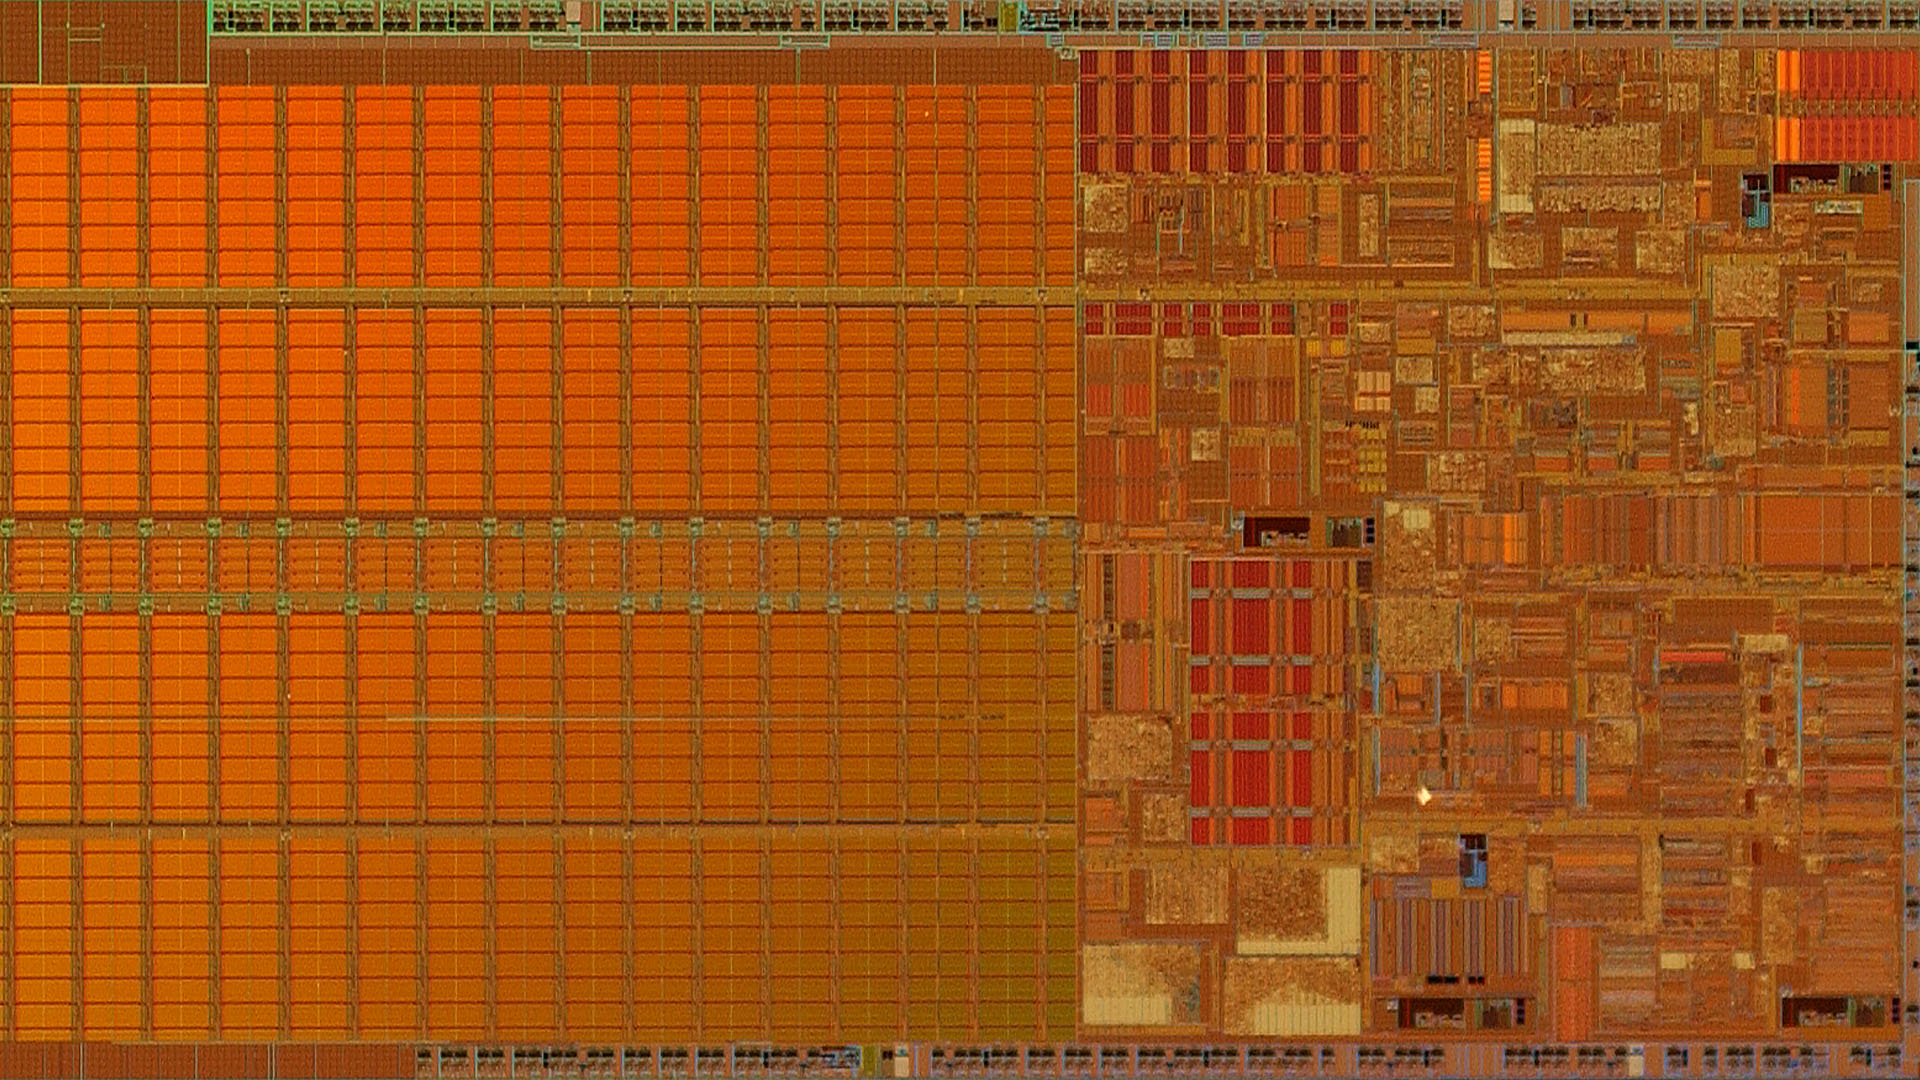 Intel Pentium M die shot